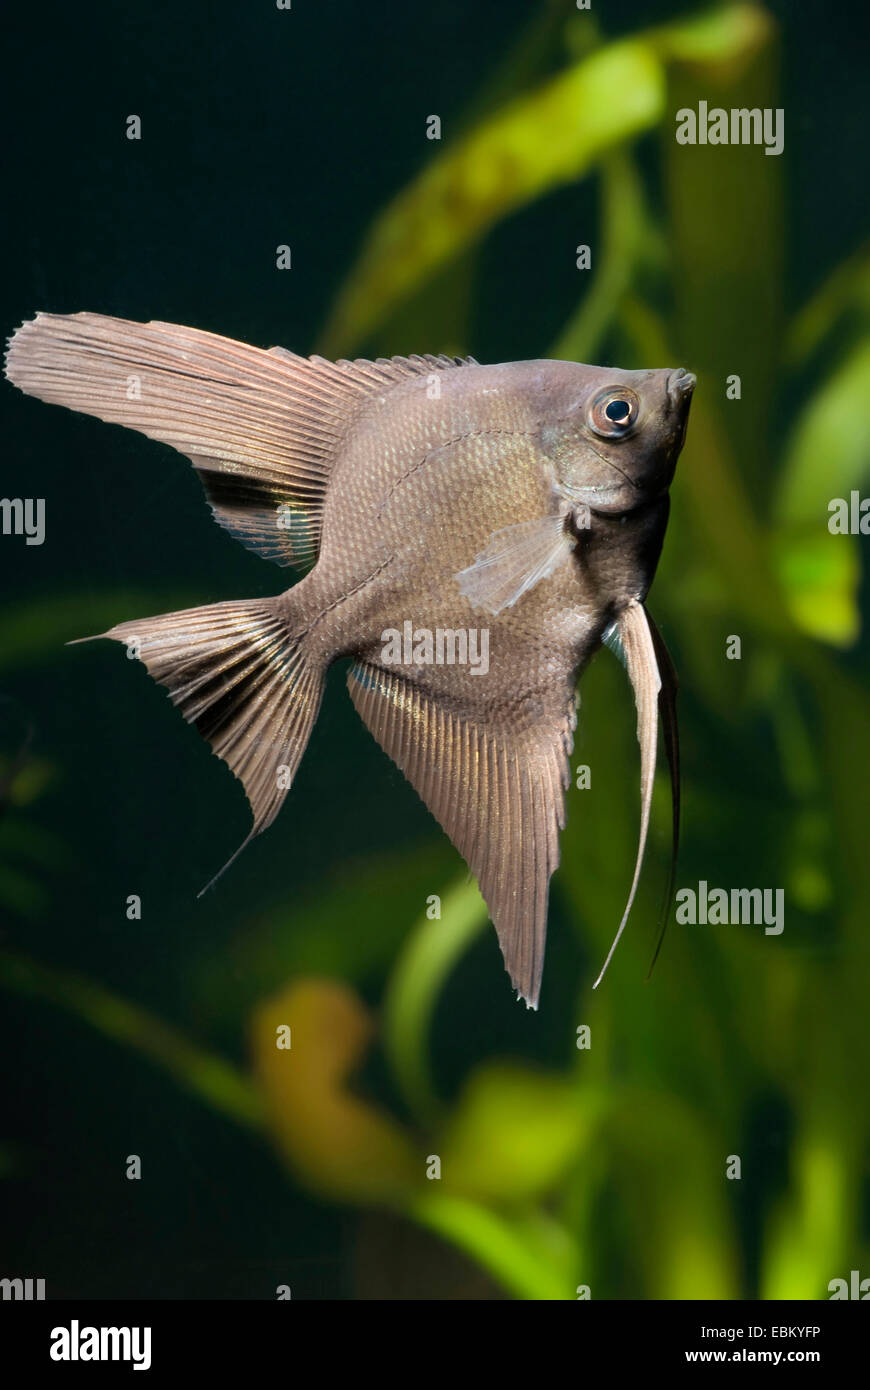 Black angel fish immagini e fotografie stock ad alta risoluzione - Alamy